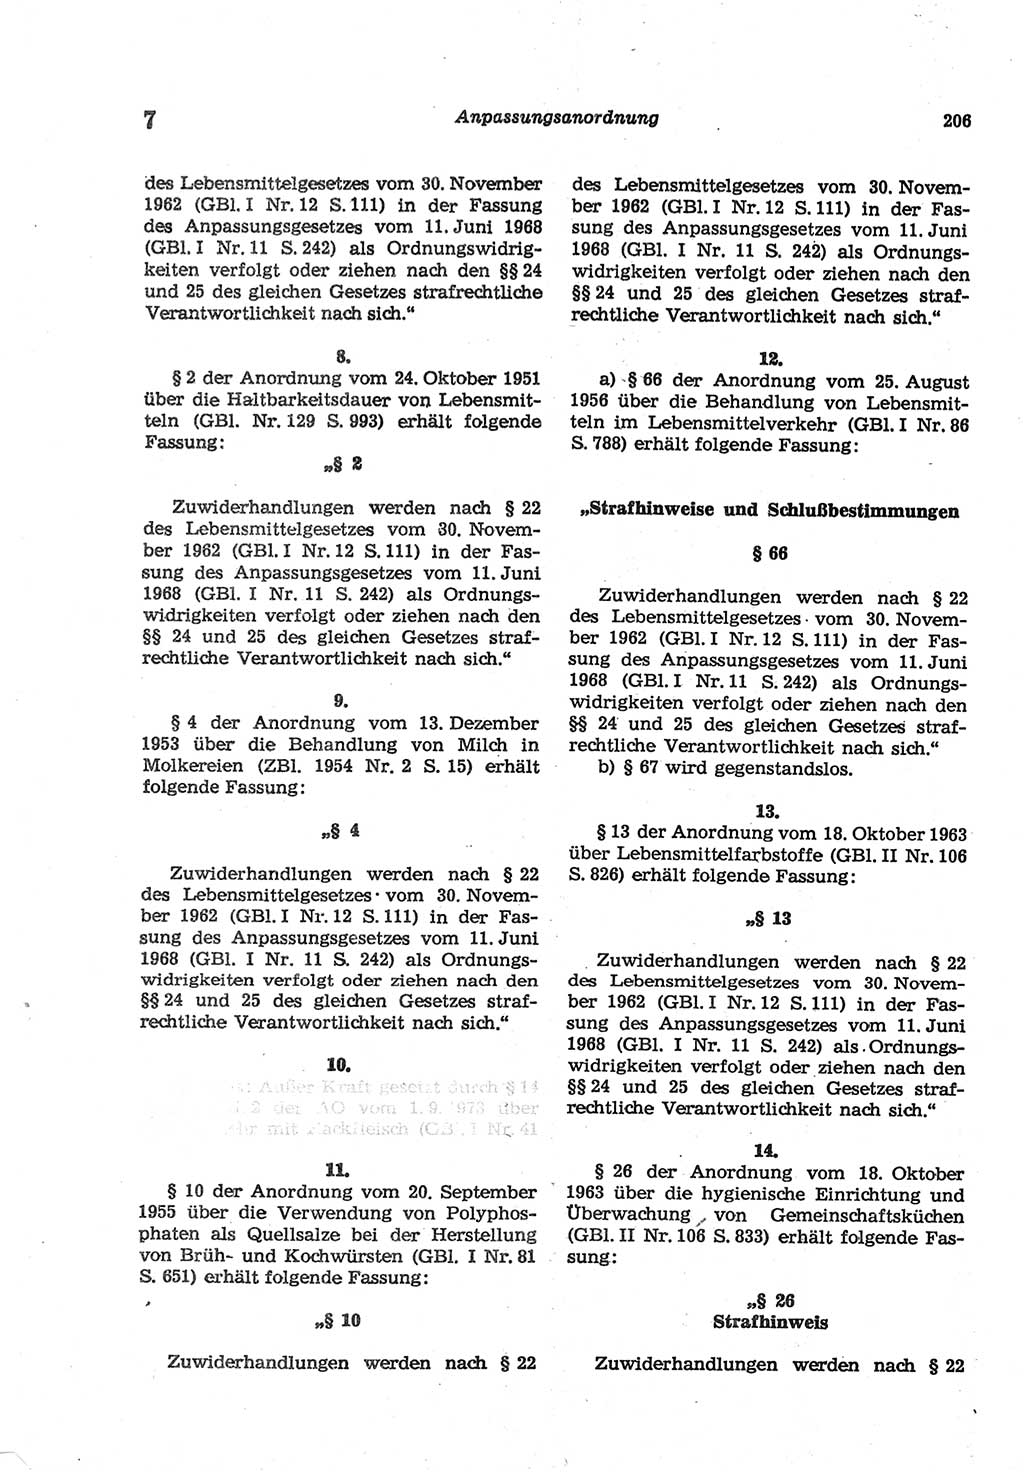 Strafgesetzbuch (StGB) der Deutschen Demokratischen Republik (DDR) und angrenzende Gesetze und Bestimmungen 1977, Seite 206 (StGB DDR Ges. Best. 1977, S. 206)